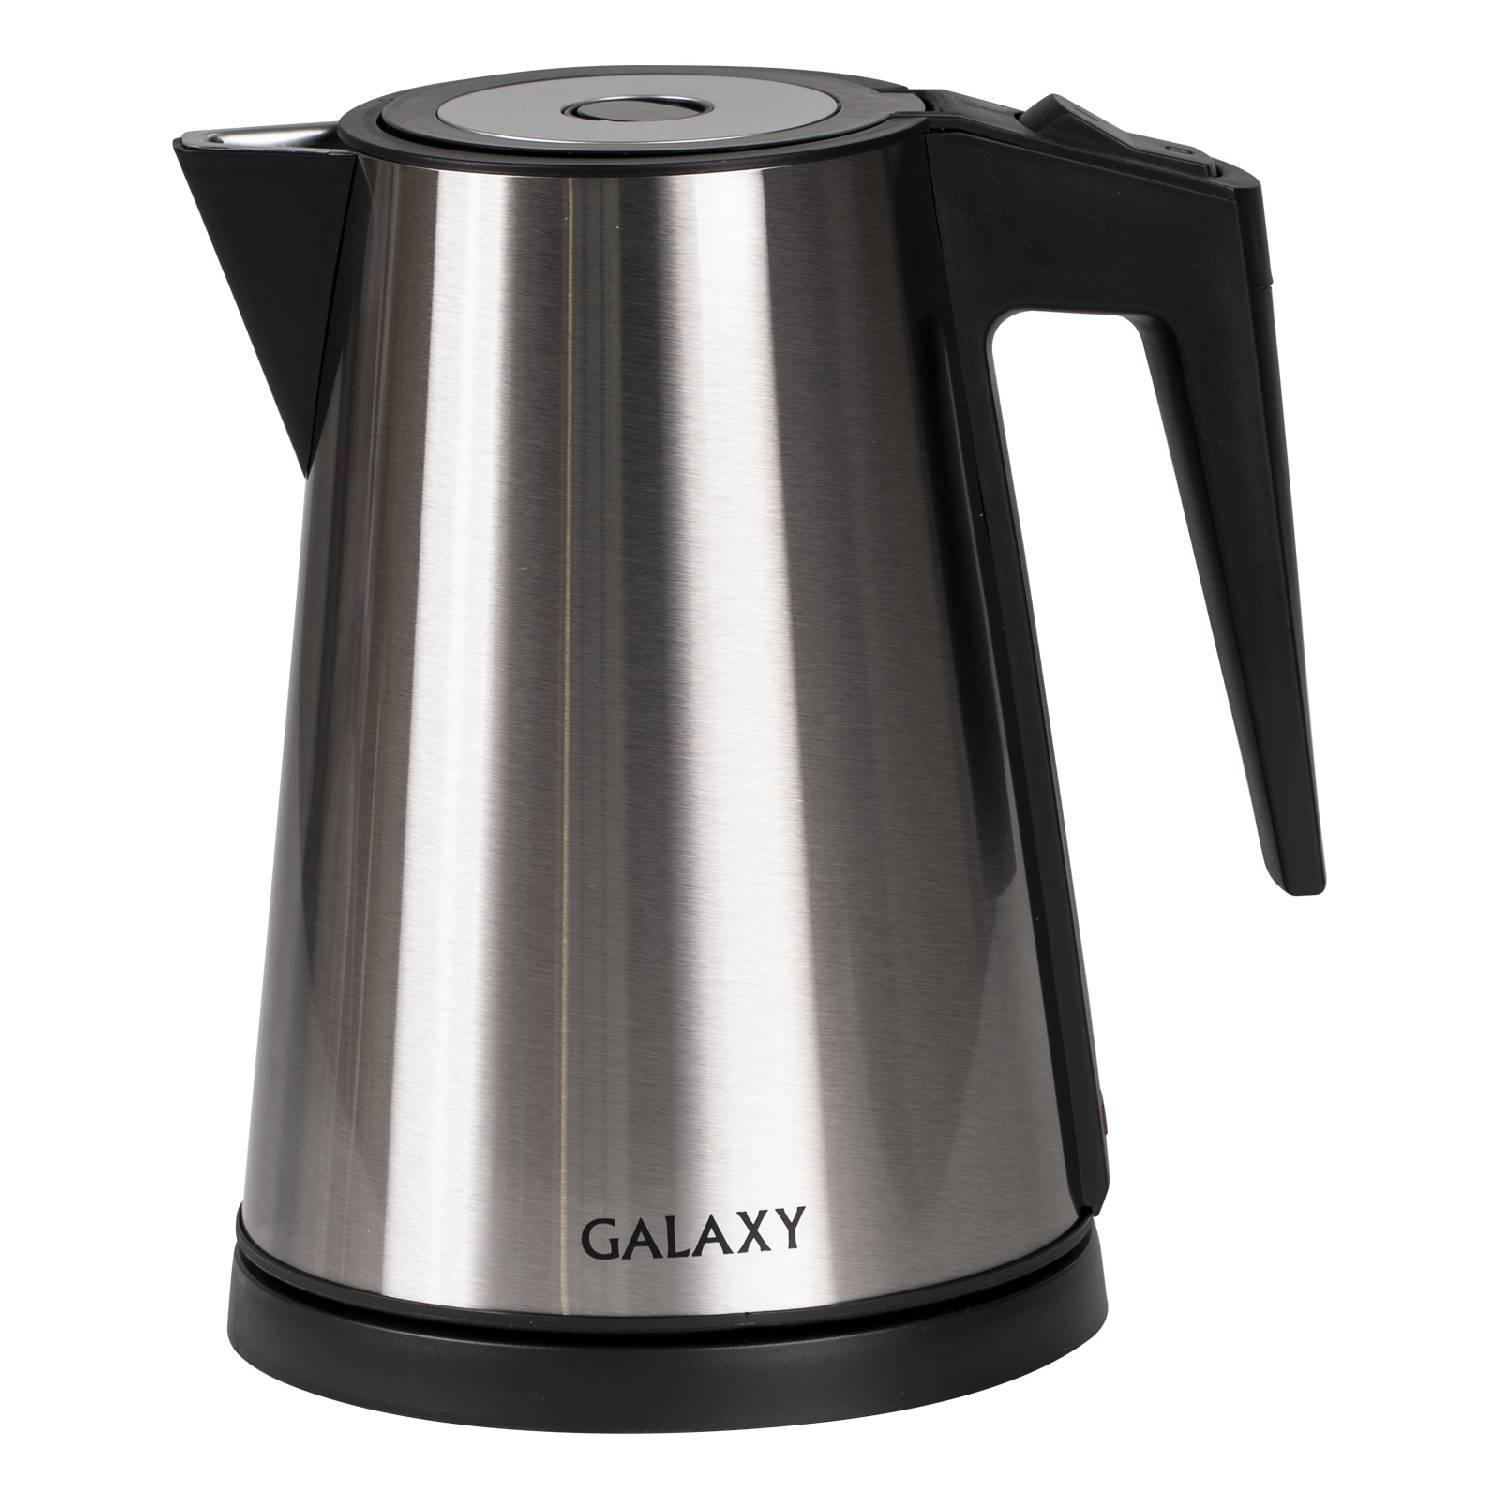 Galaxy gl 0326 стальной (12шт) чайник электрический мощностью 1200 Вт, объем 1,2 л